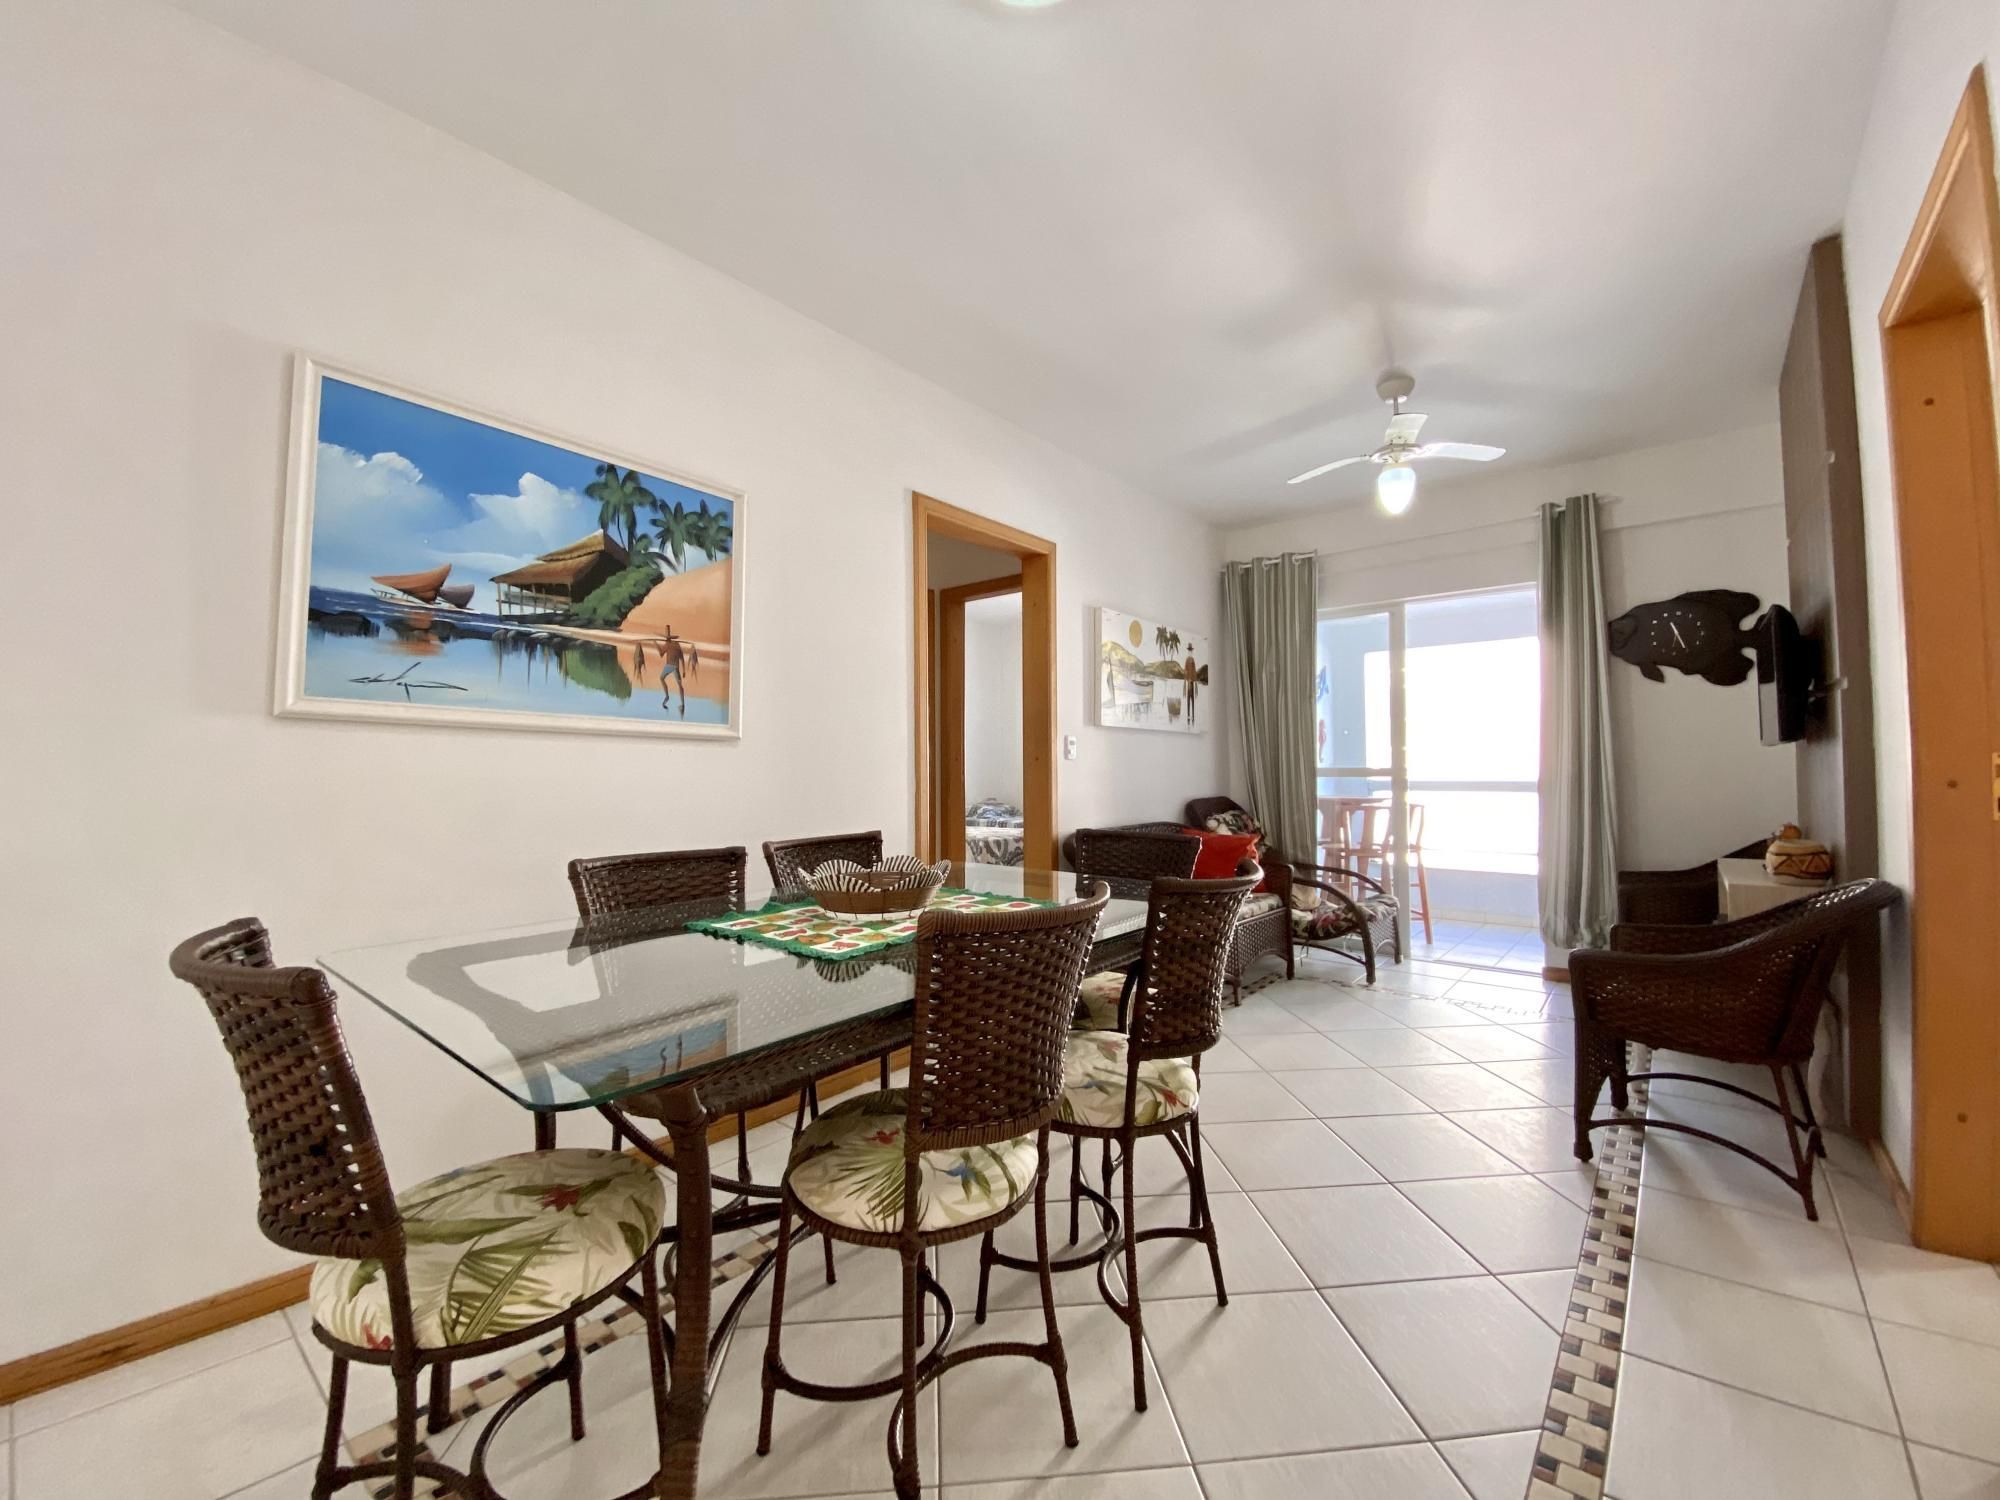 Apartamento com 2 Dormitórios para alugar, 69 m² por R$ 280,00